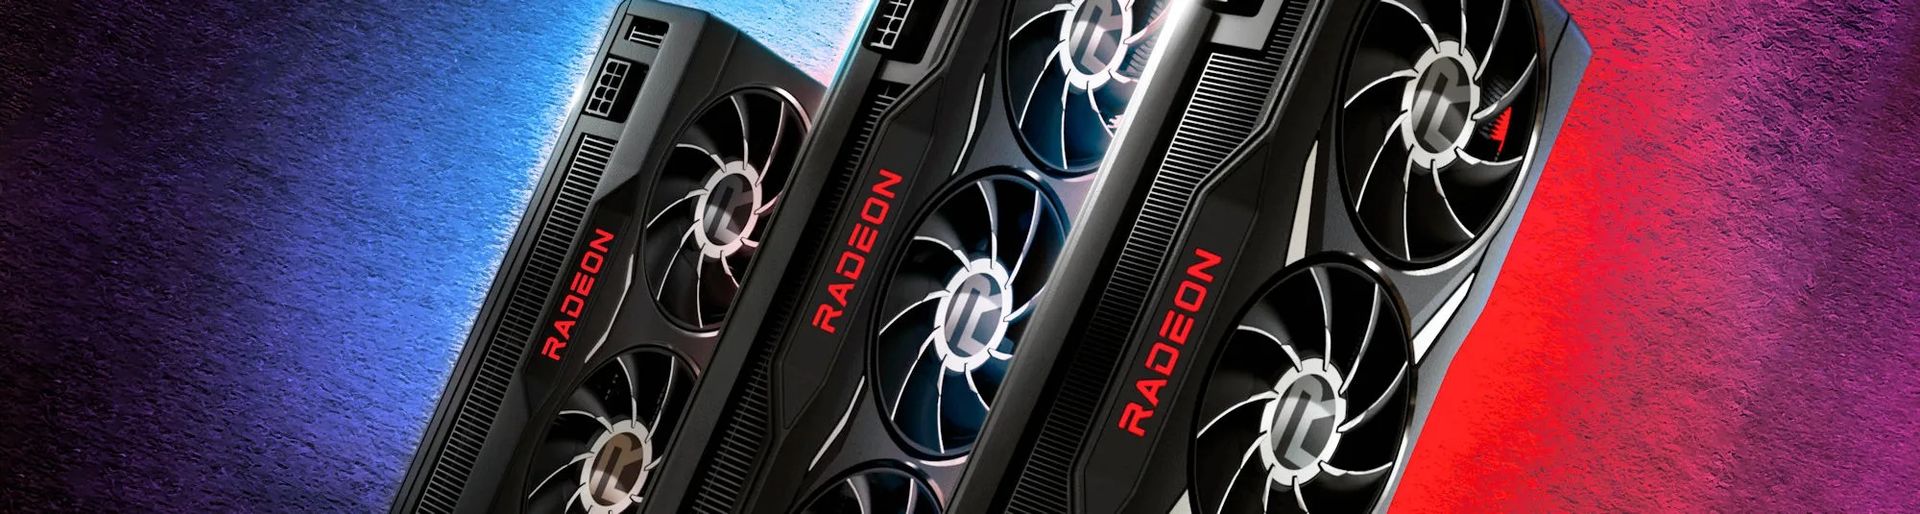 AMD ra mắt card đồ họa mới: Radeon RX 6950XT, 6750XT và 6650XT